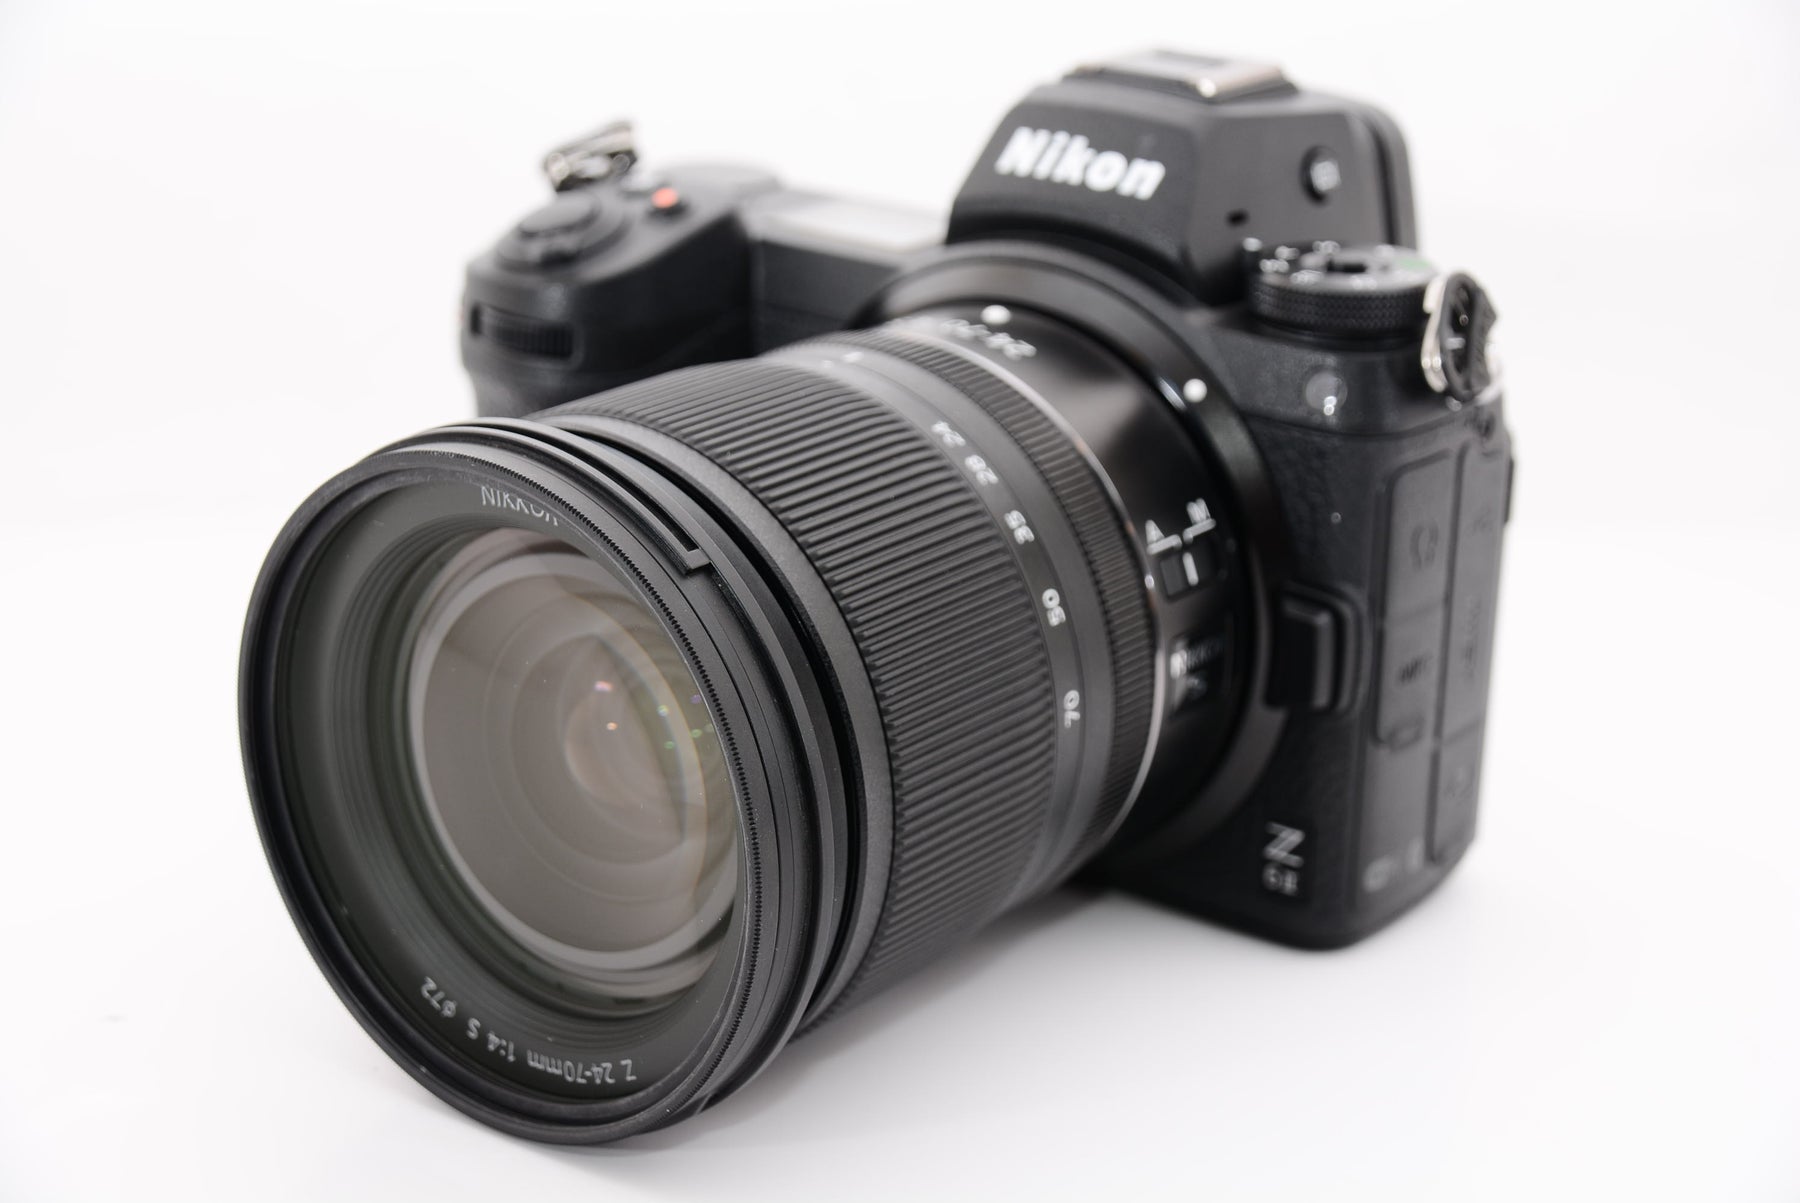 【ほぼ新品】Nikon ミラーレス一眼カメラ Z6II レンズキット NIKKOR Z 24-70mm f/4 付属 Z6IILK24-70 black